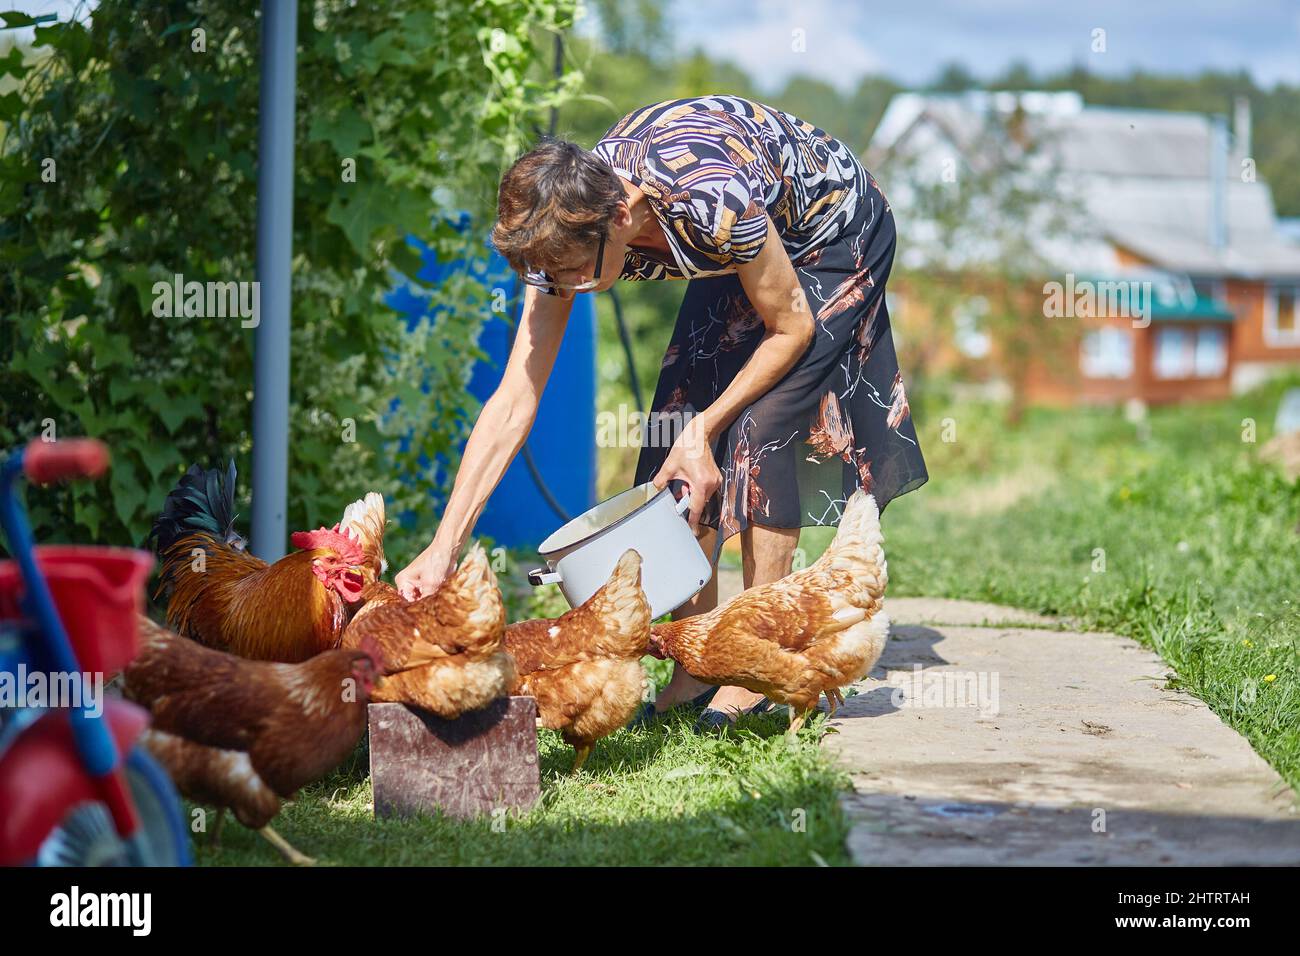 la donna povera sottile alimenta i polli. I contorni di una casa di villaggio sono visibili in lontananza. Vita di nonna in campagna. Foto Stock